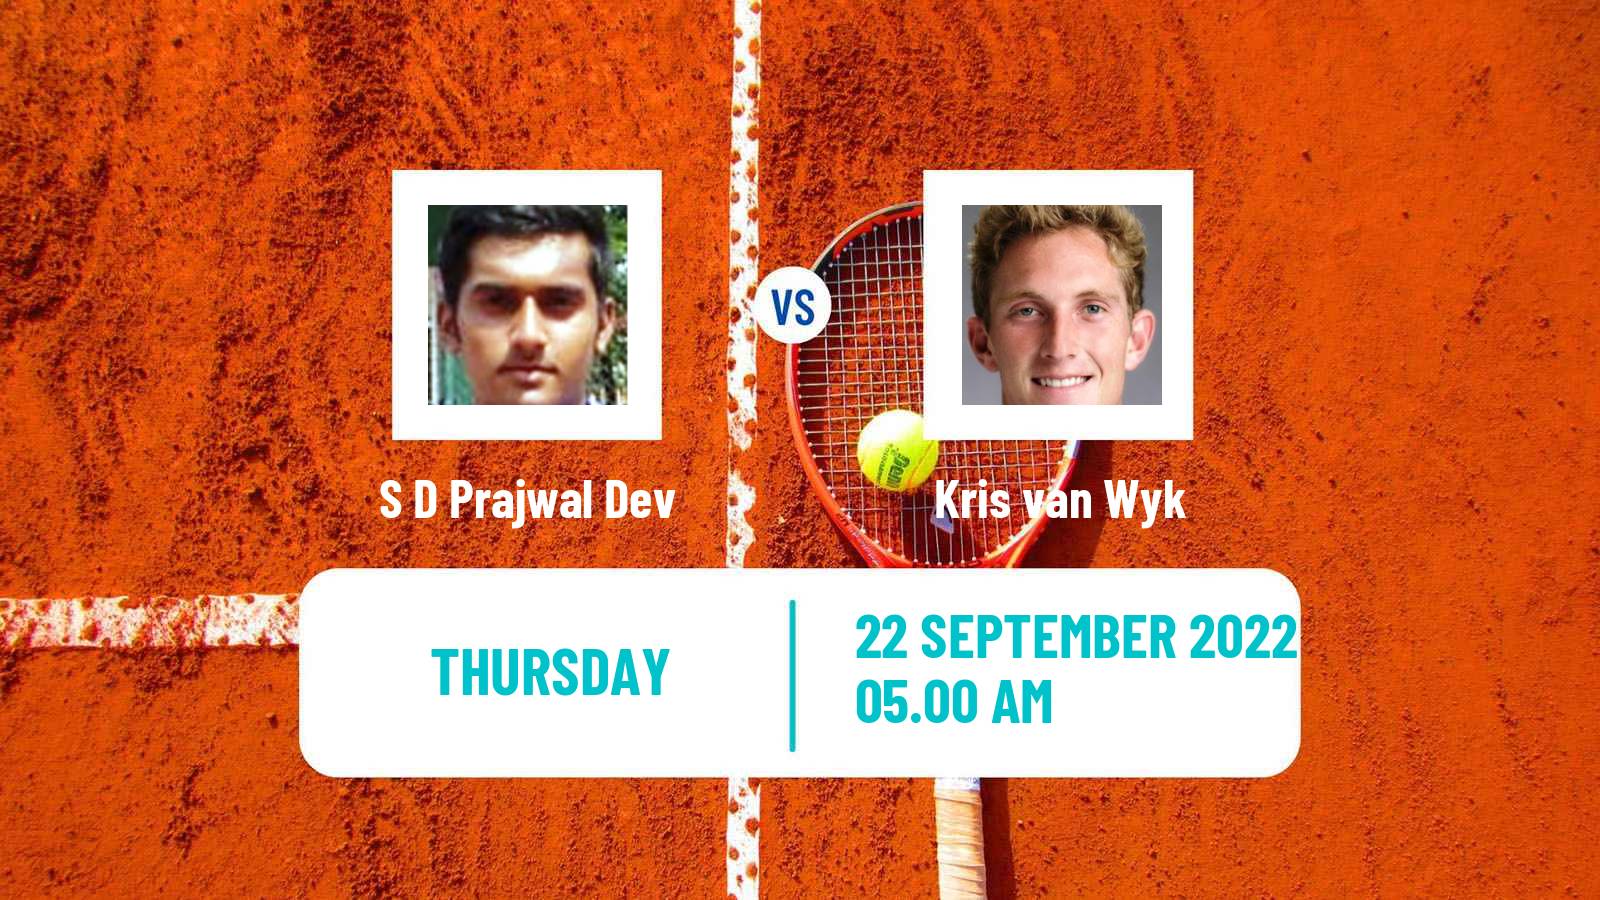 Tennis ITF Tournaments S D Prajwal Dev - Kris van Wyk